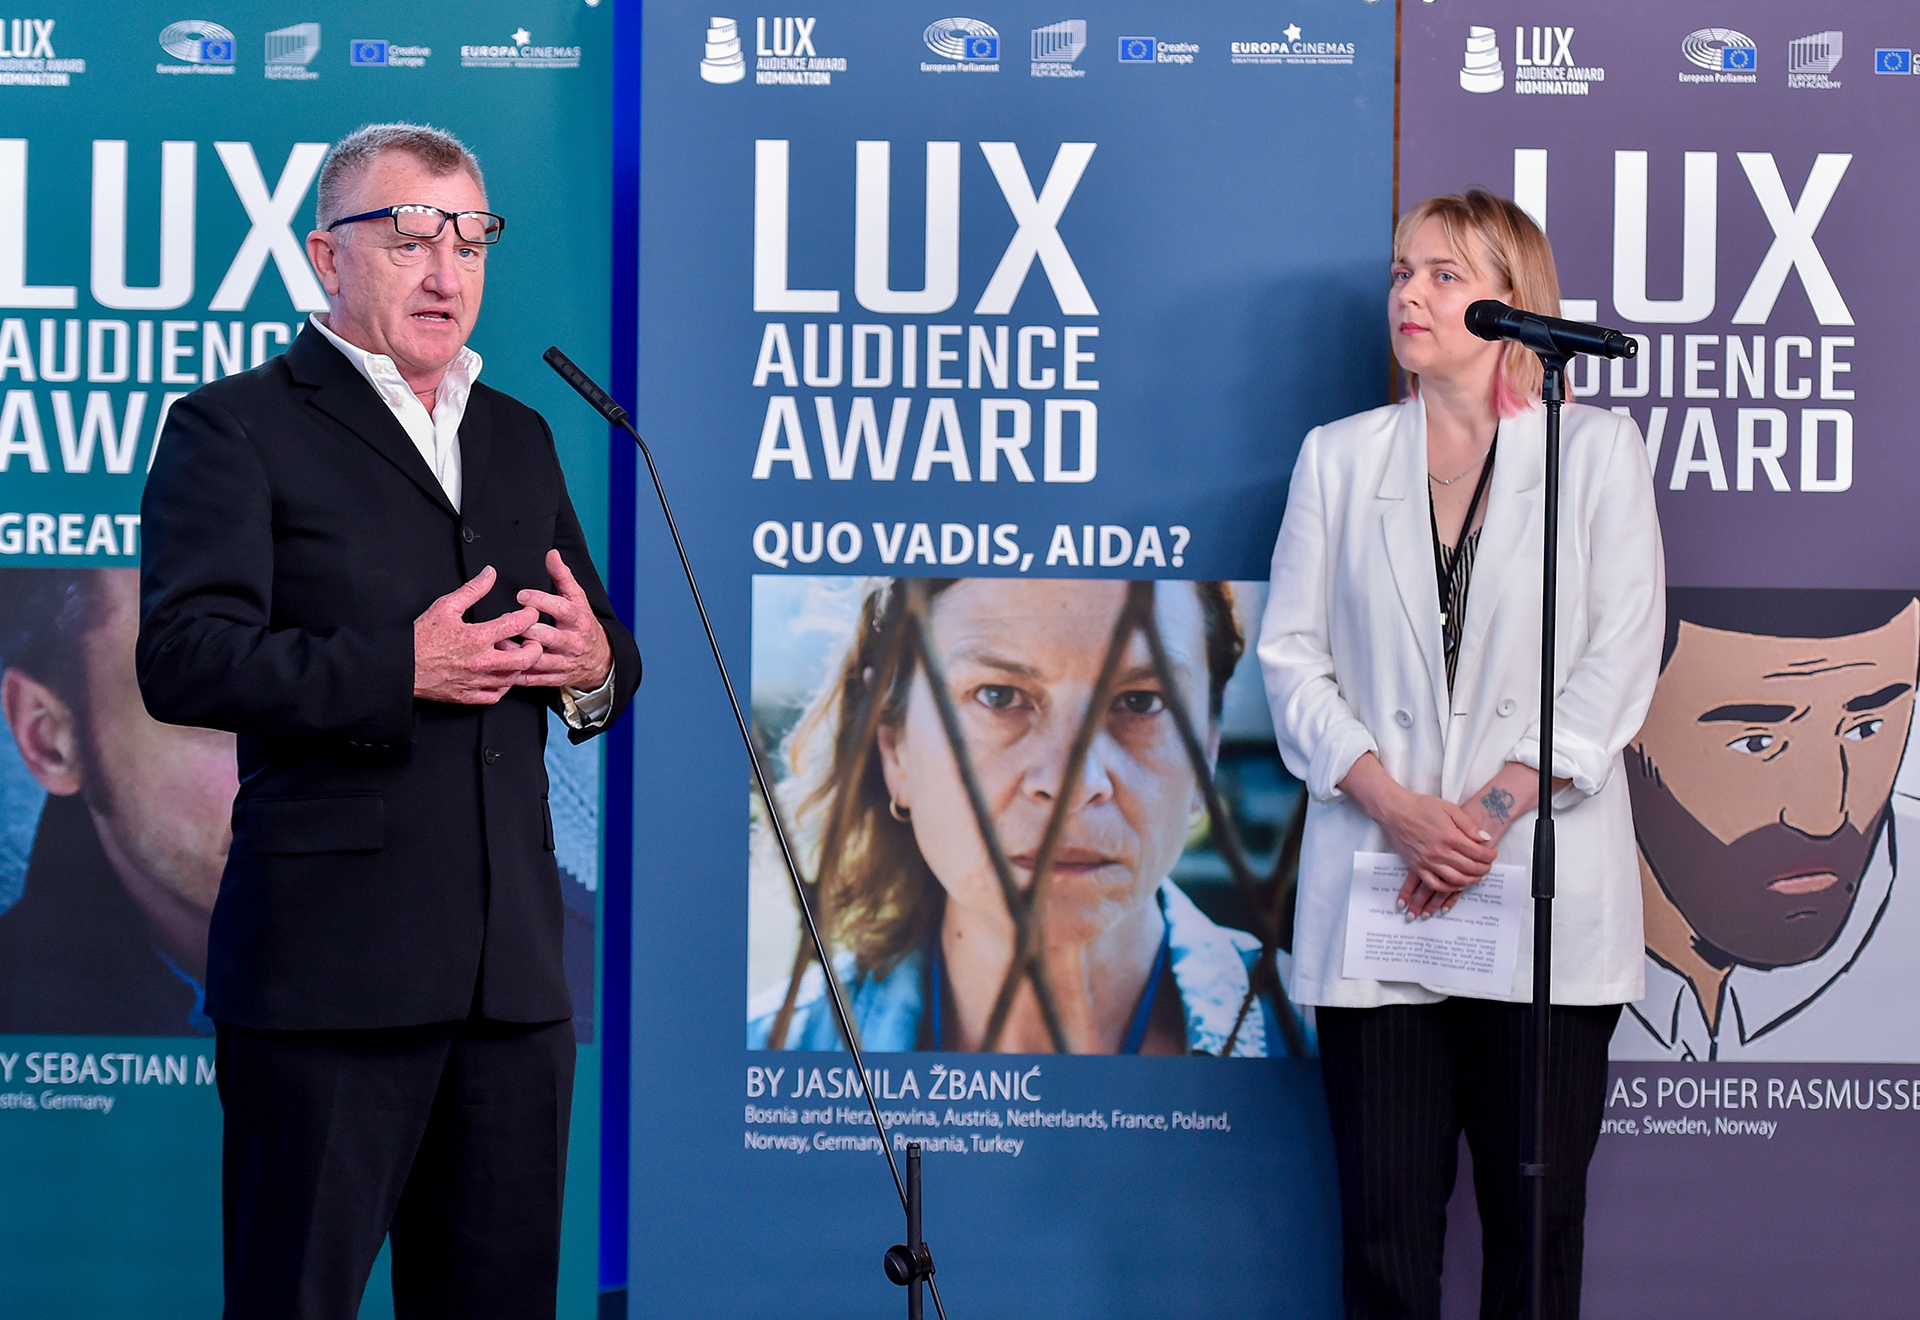 Zwei Personen unterhalten sich vor einer Plakatwand des LUX Audience Awards